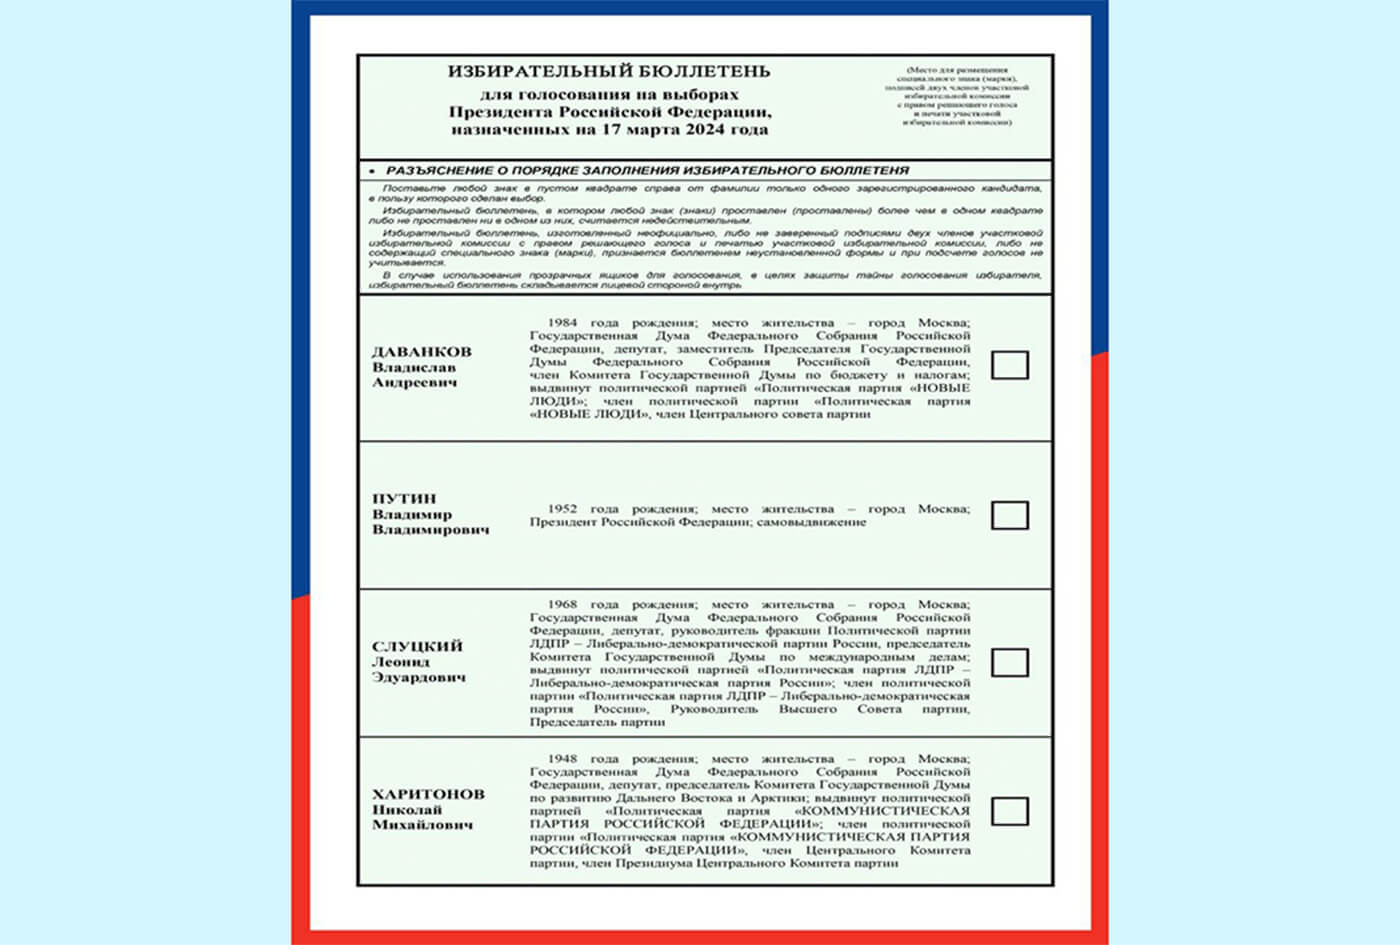 ЦИК России утвержден текст избирательного бюллетеня